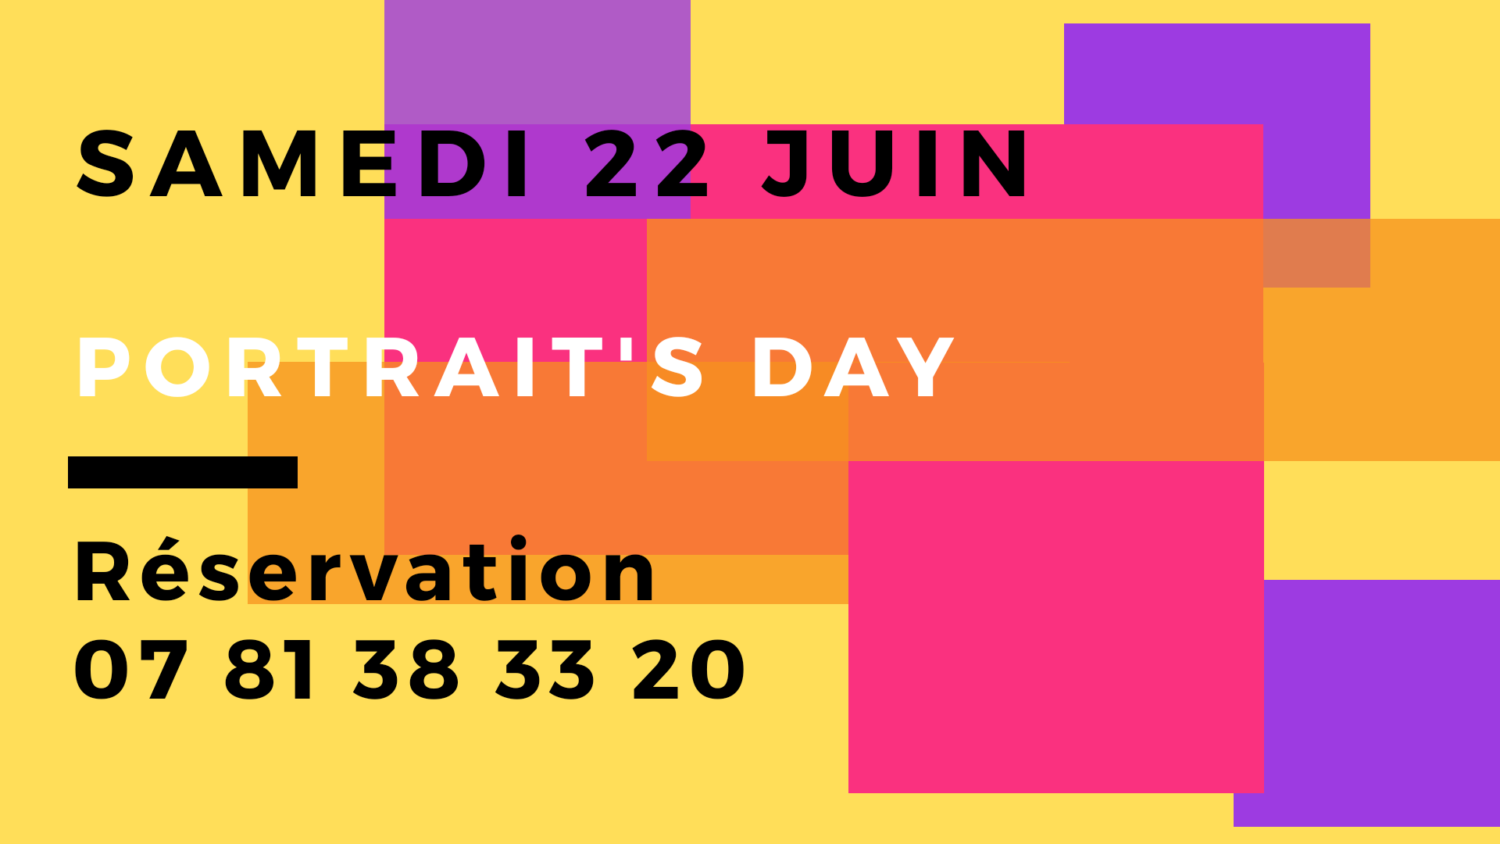 Portrait's day à Meudon : le 22 juin 2019, au studio photo, journée dédiée au portrait linkedin.